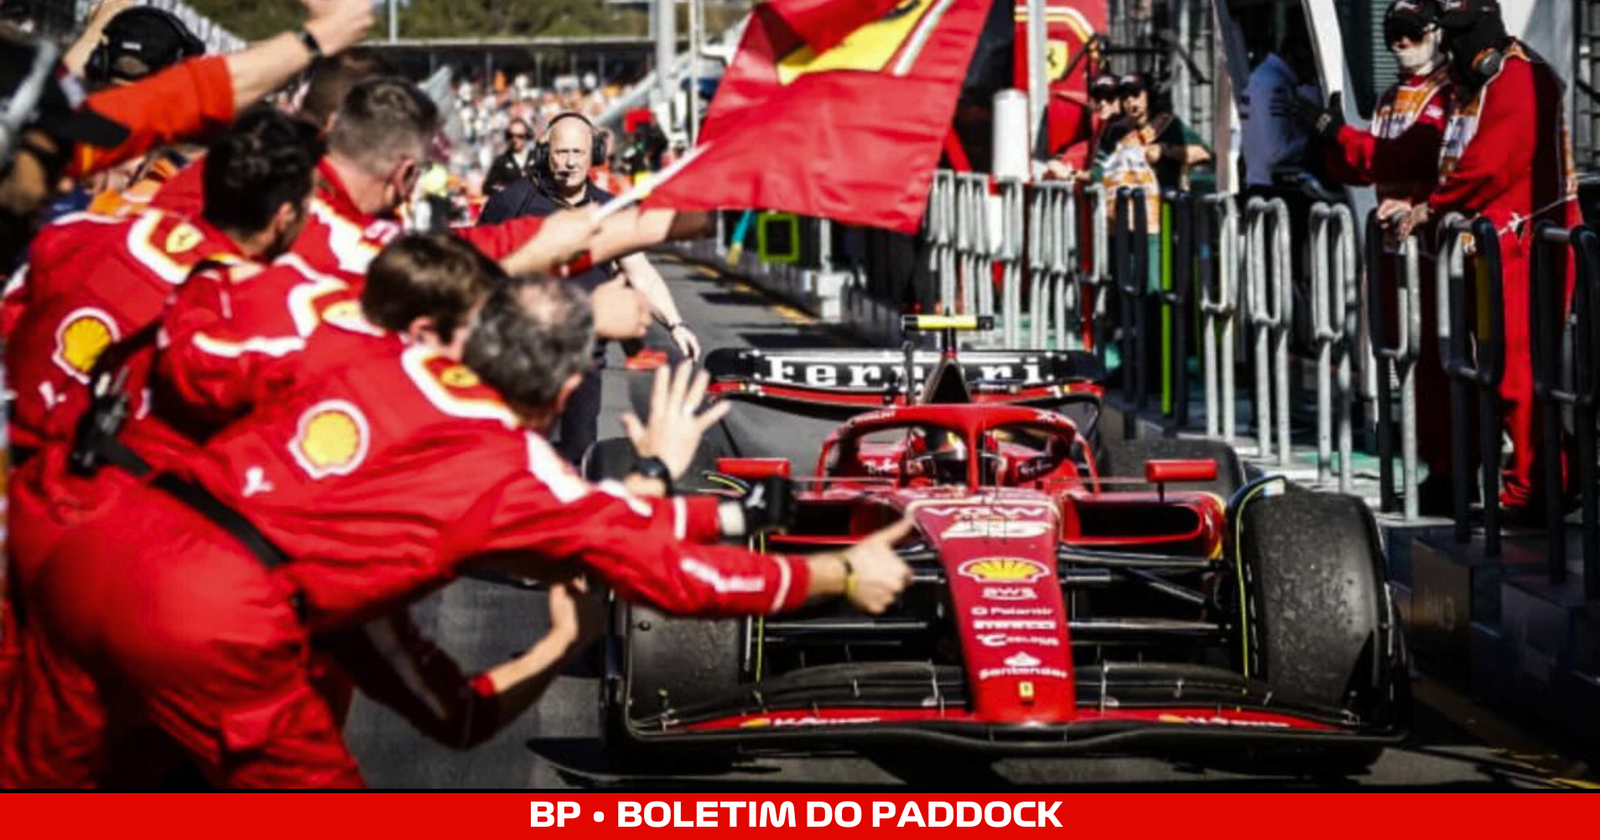 BPCast 248 • Análise do Grande Prêmio da Austrália de Fórmula 1: Carlos Sainz domina, vence e conduz a Ferrari para uma dobradinha, roubando para si o protagonismo da equipe italiana • BP • Boletim do Paddock